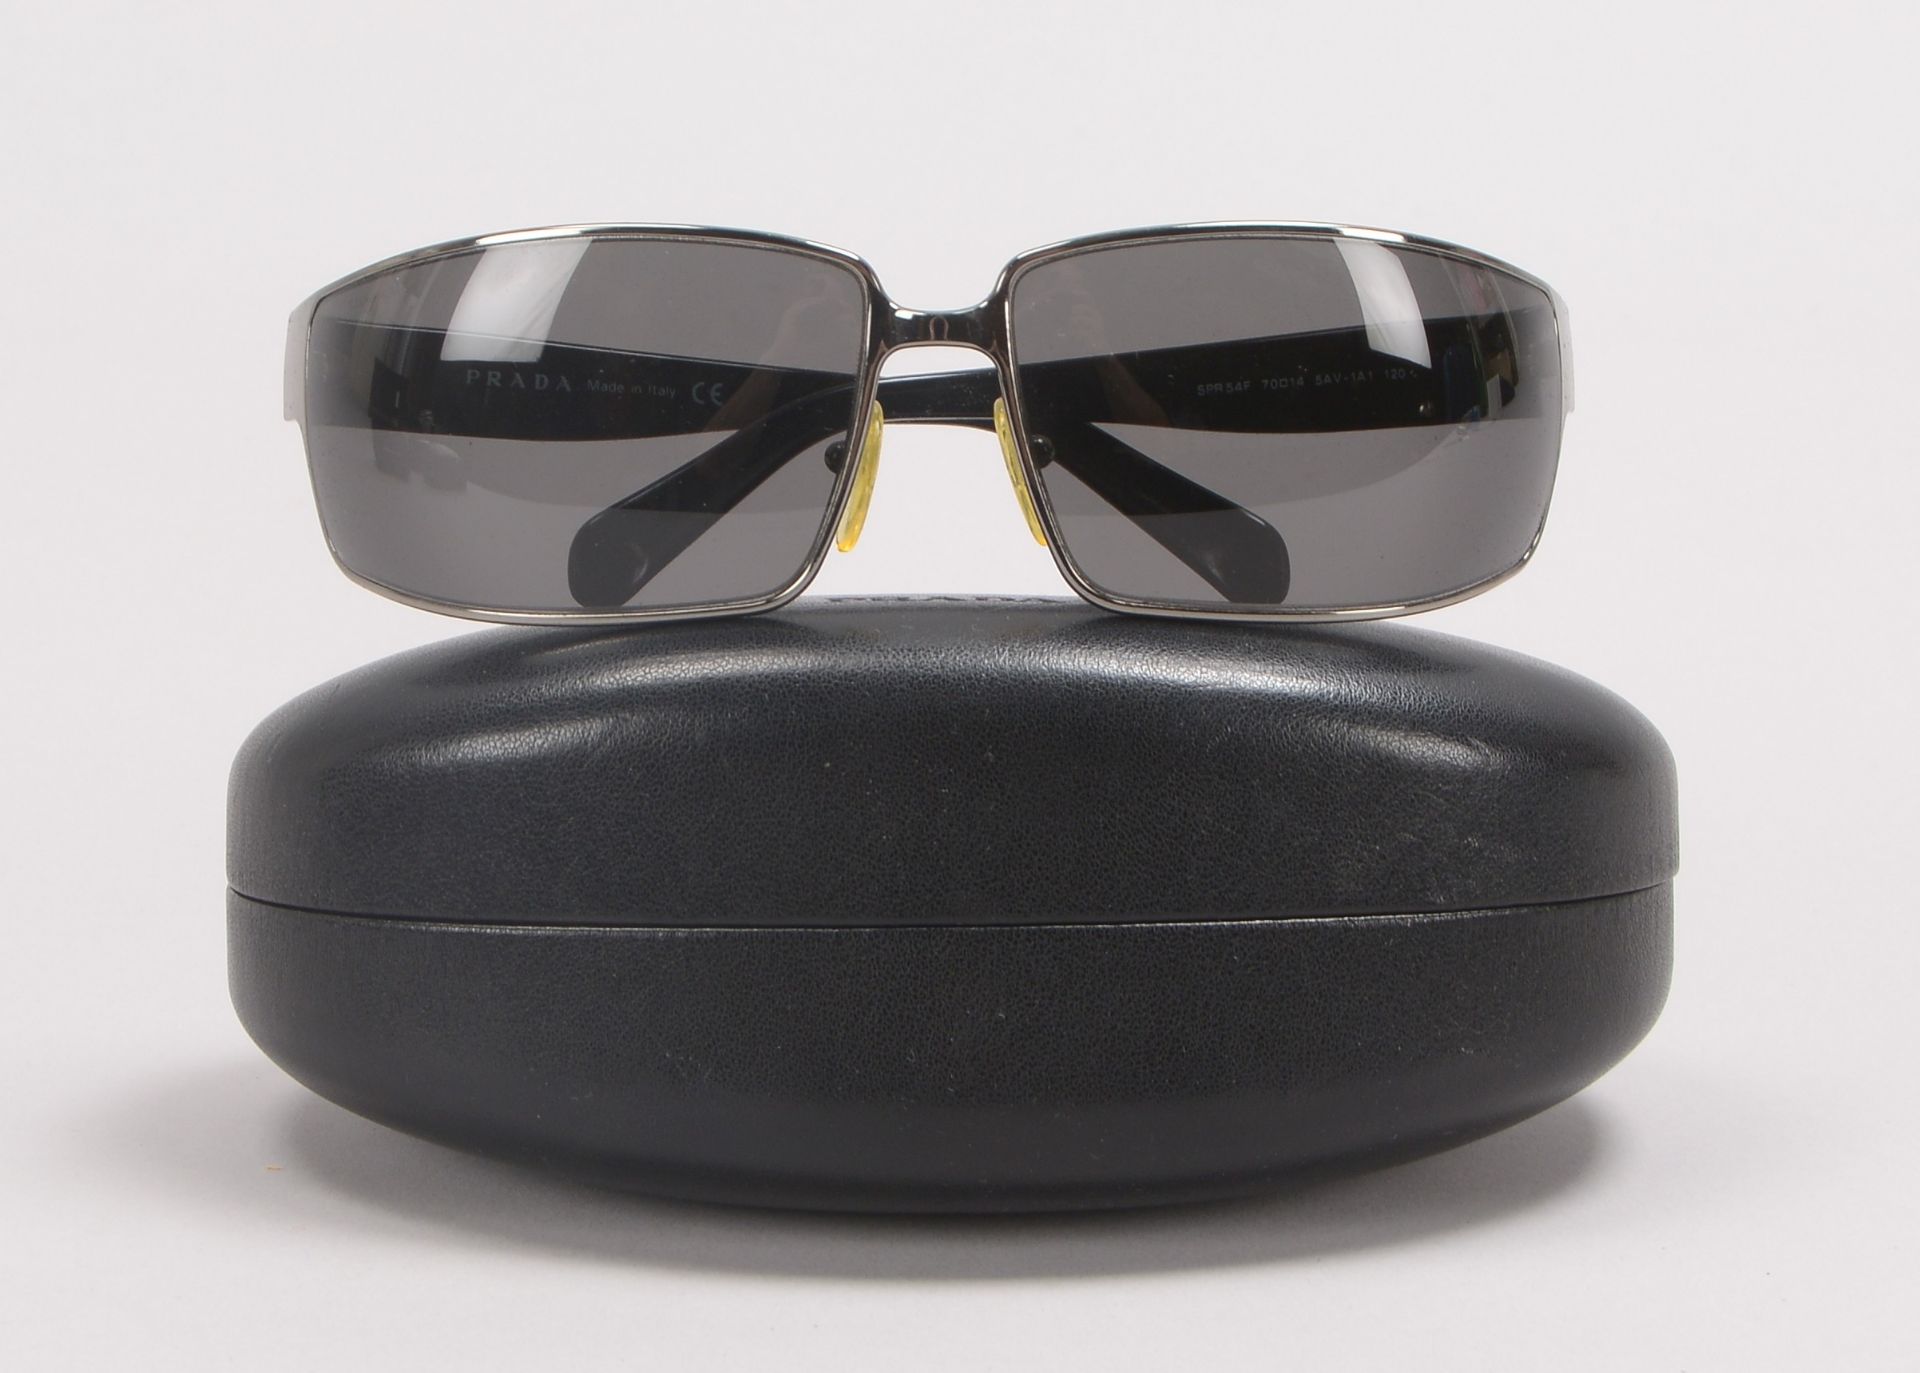 Prada/Italien, Designer-Sonnenbrille, im Etui - in gepflegtem Zustand; Rahmenbreite 14 cm - Bild 3 aus 3